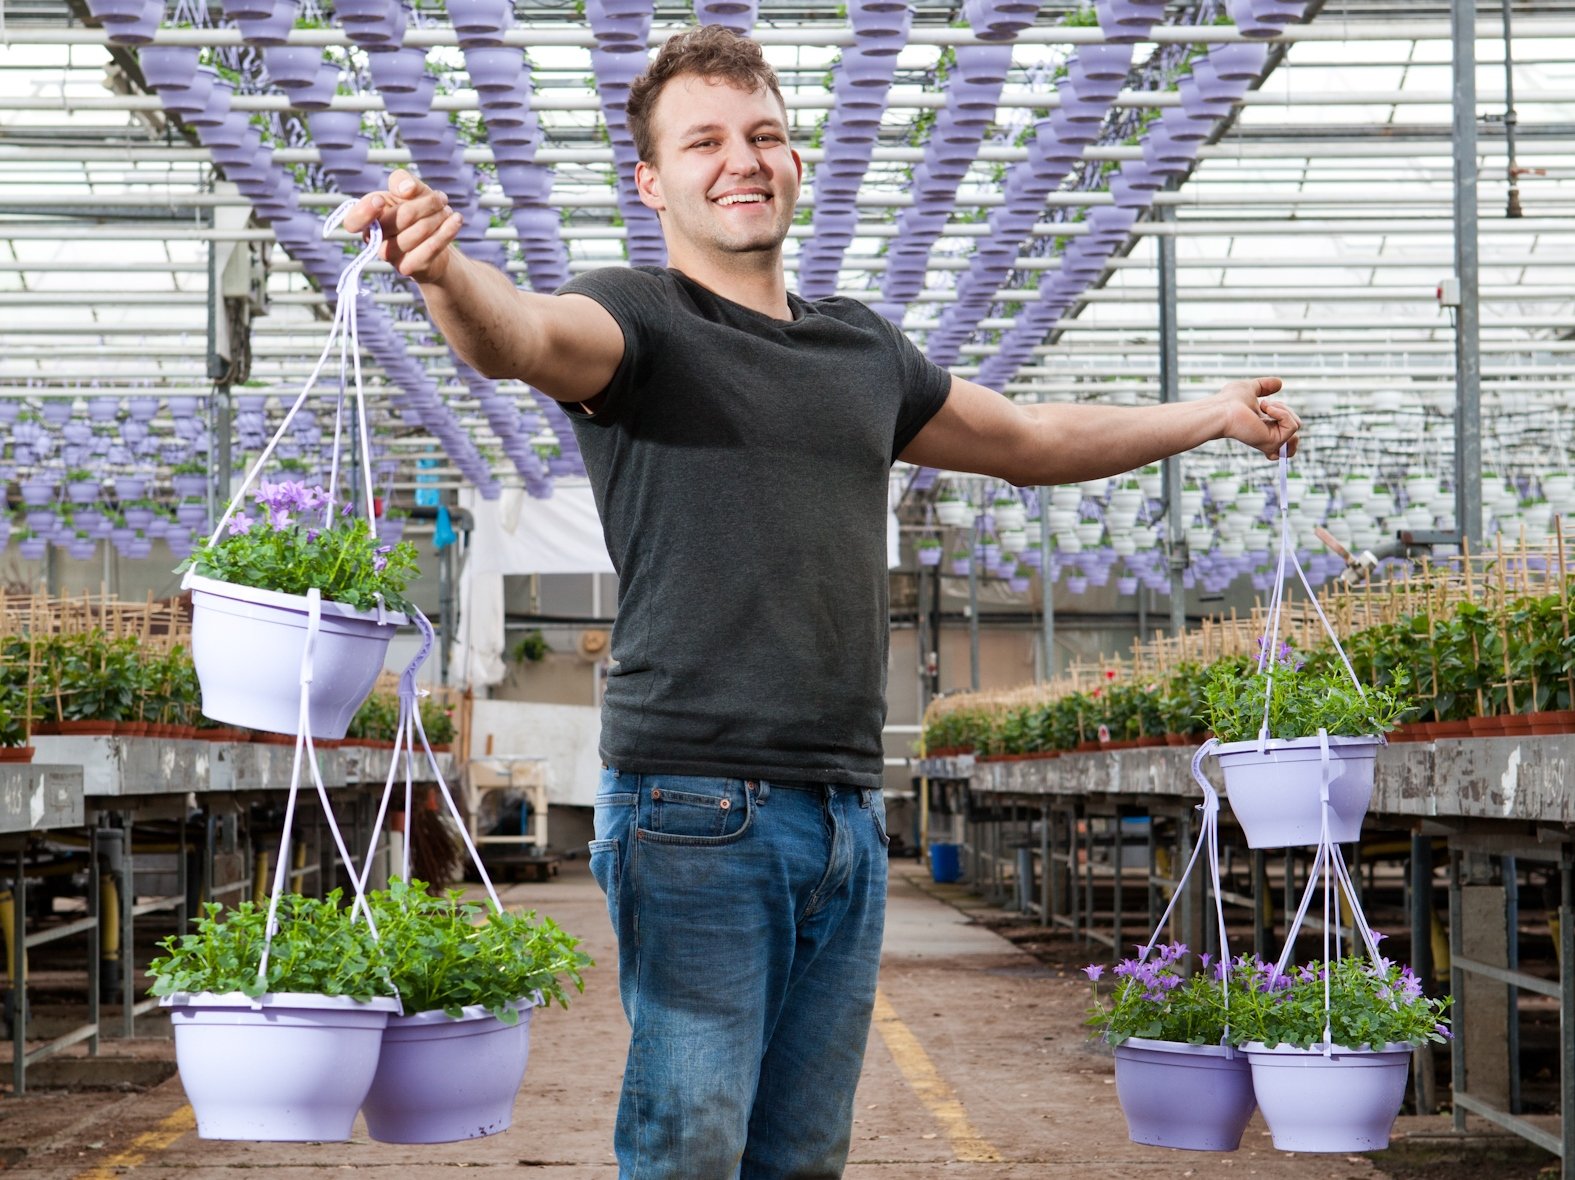 Pantar-medewerker Jerry houdt met een vrolijk gezicht 3 planten in hangpotten vast in een kas.